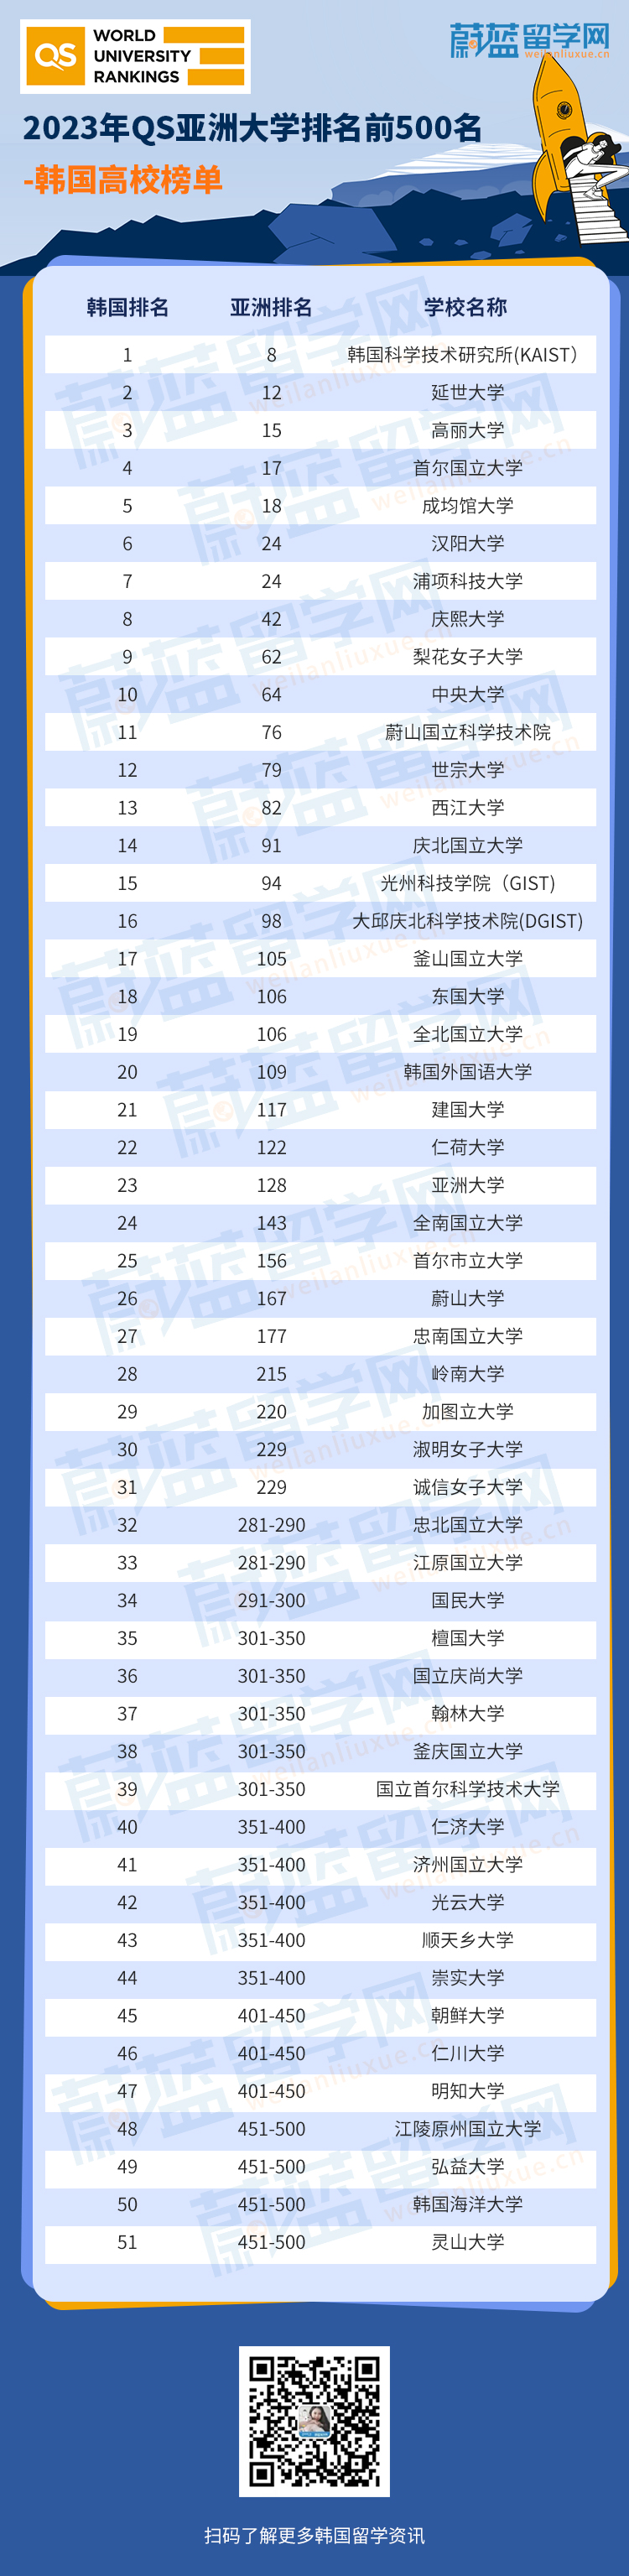 2023年QS亚洲大学排名前500名-韩国高校榜单-有水印.jpg